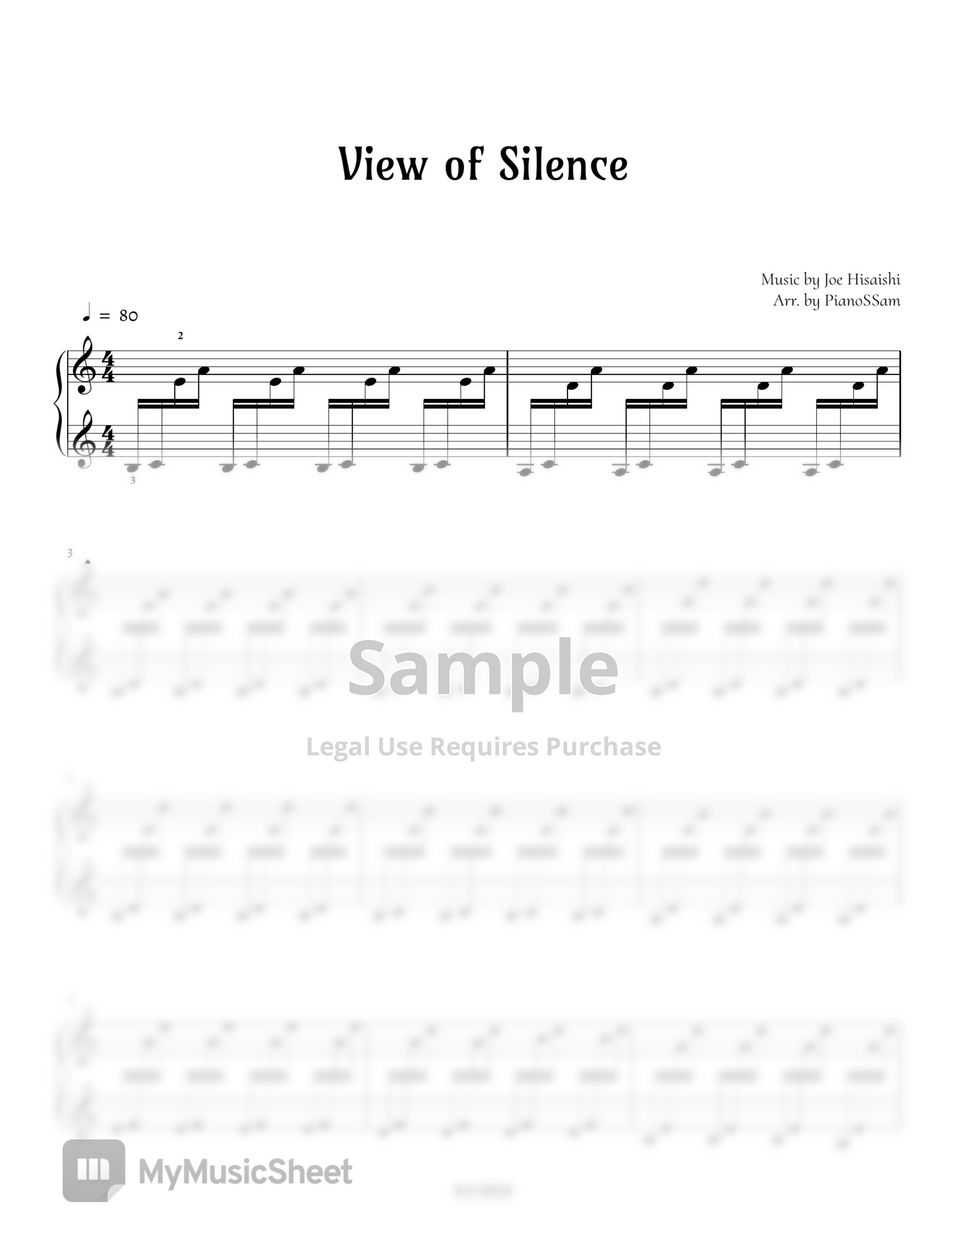 히사이시 조 - View of Silence by PianoSSam